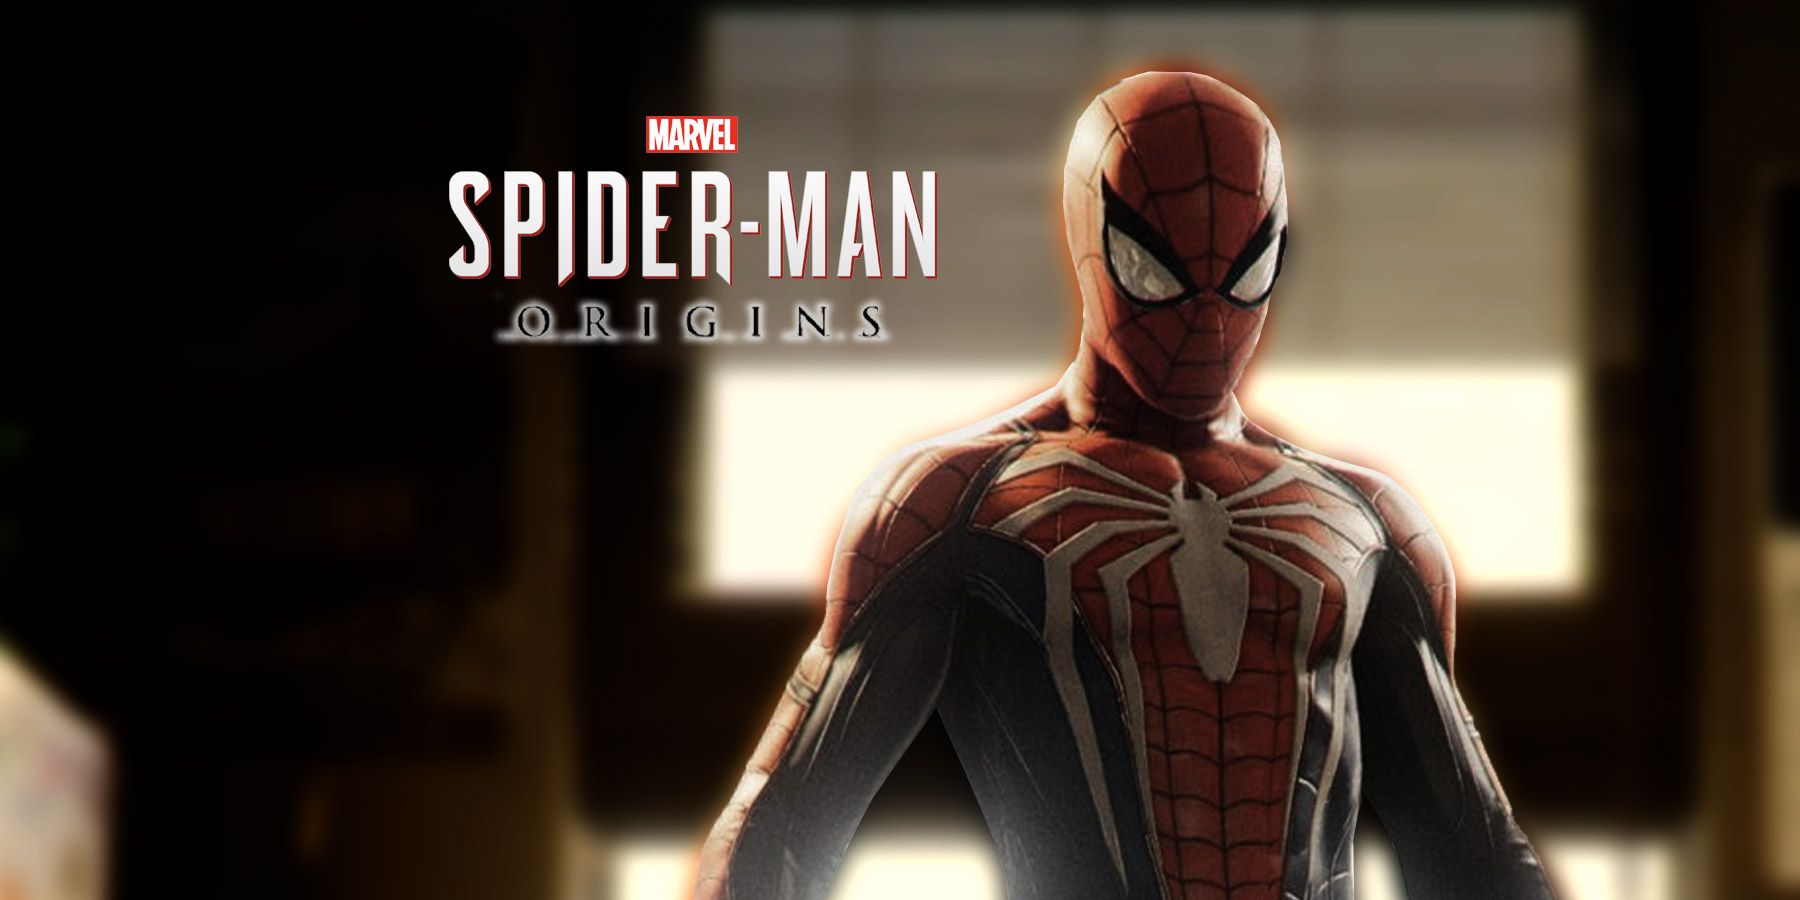 De Marvel’s Spider-Man-serie zou een prequel moeten krijgen zoals Batman: Arkham Origins